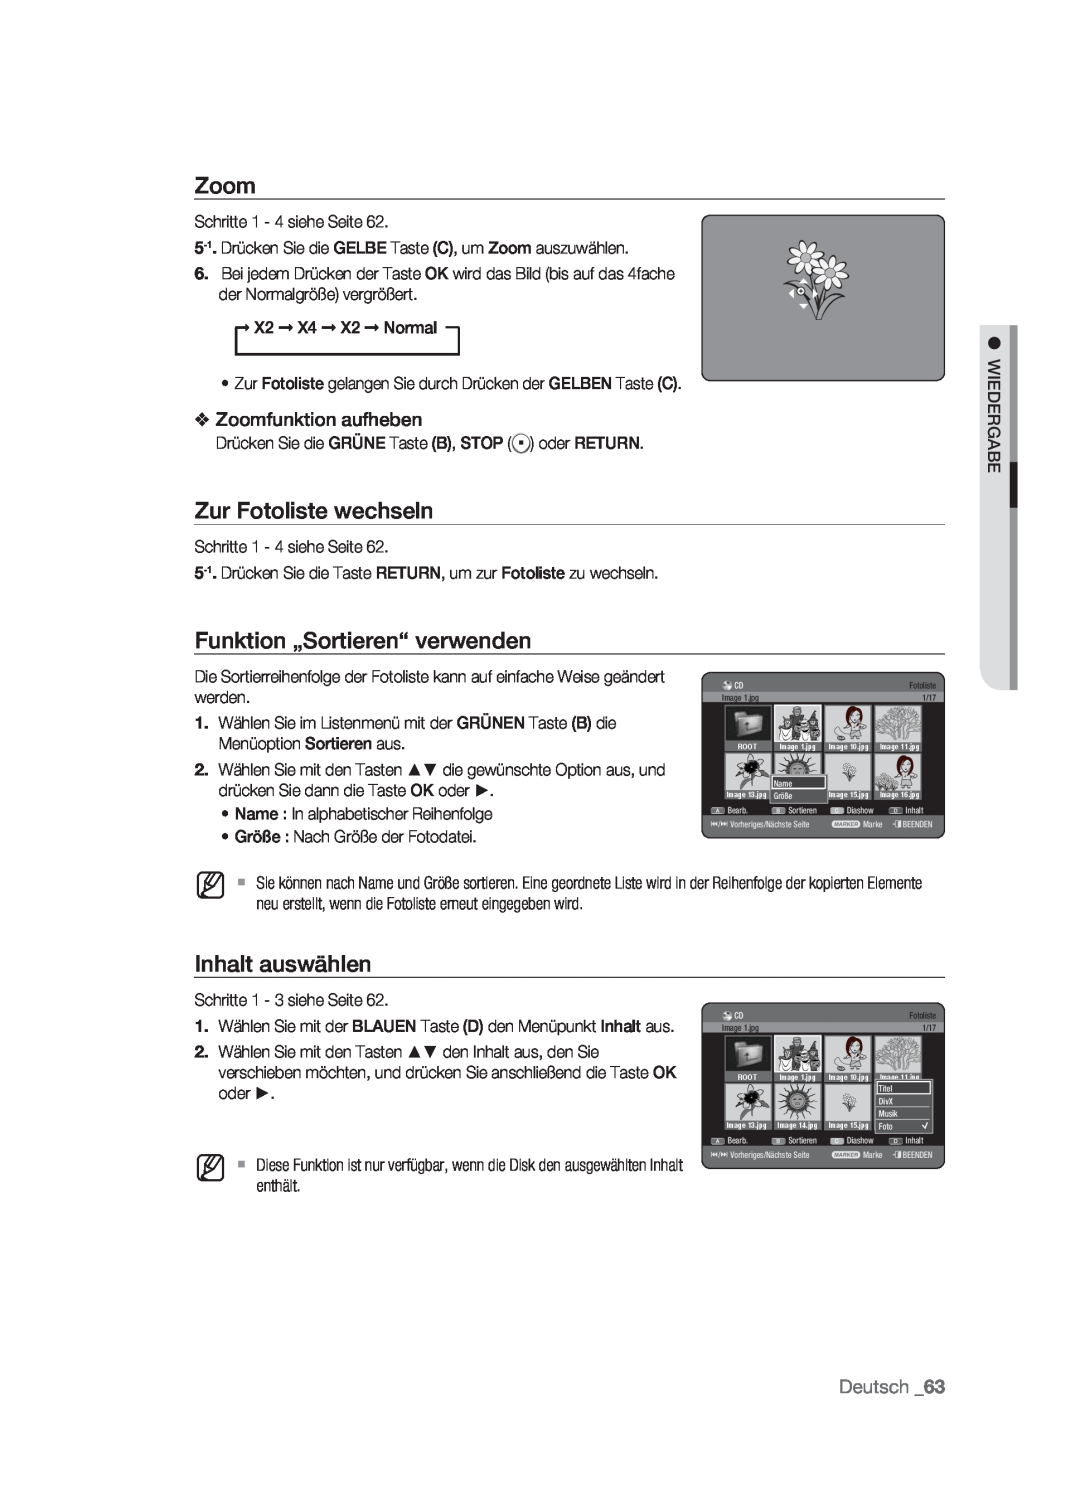 Samsung DVD-HR773/AUS Zur Fotoliste wechseln, Zoomfunktion aufheben, Funktion „Sortieren“ verwenden, Inhalt auswählen 